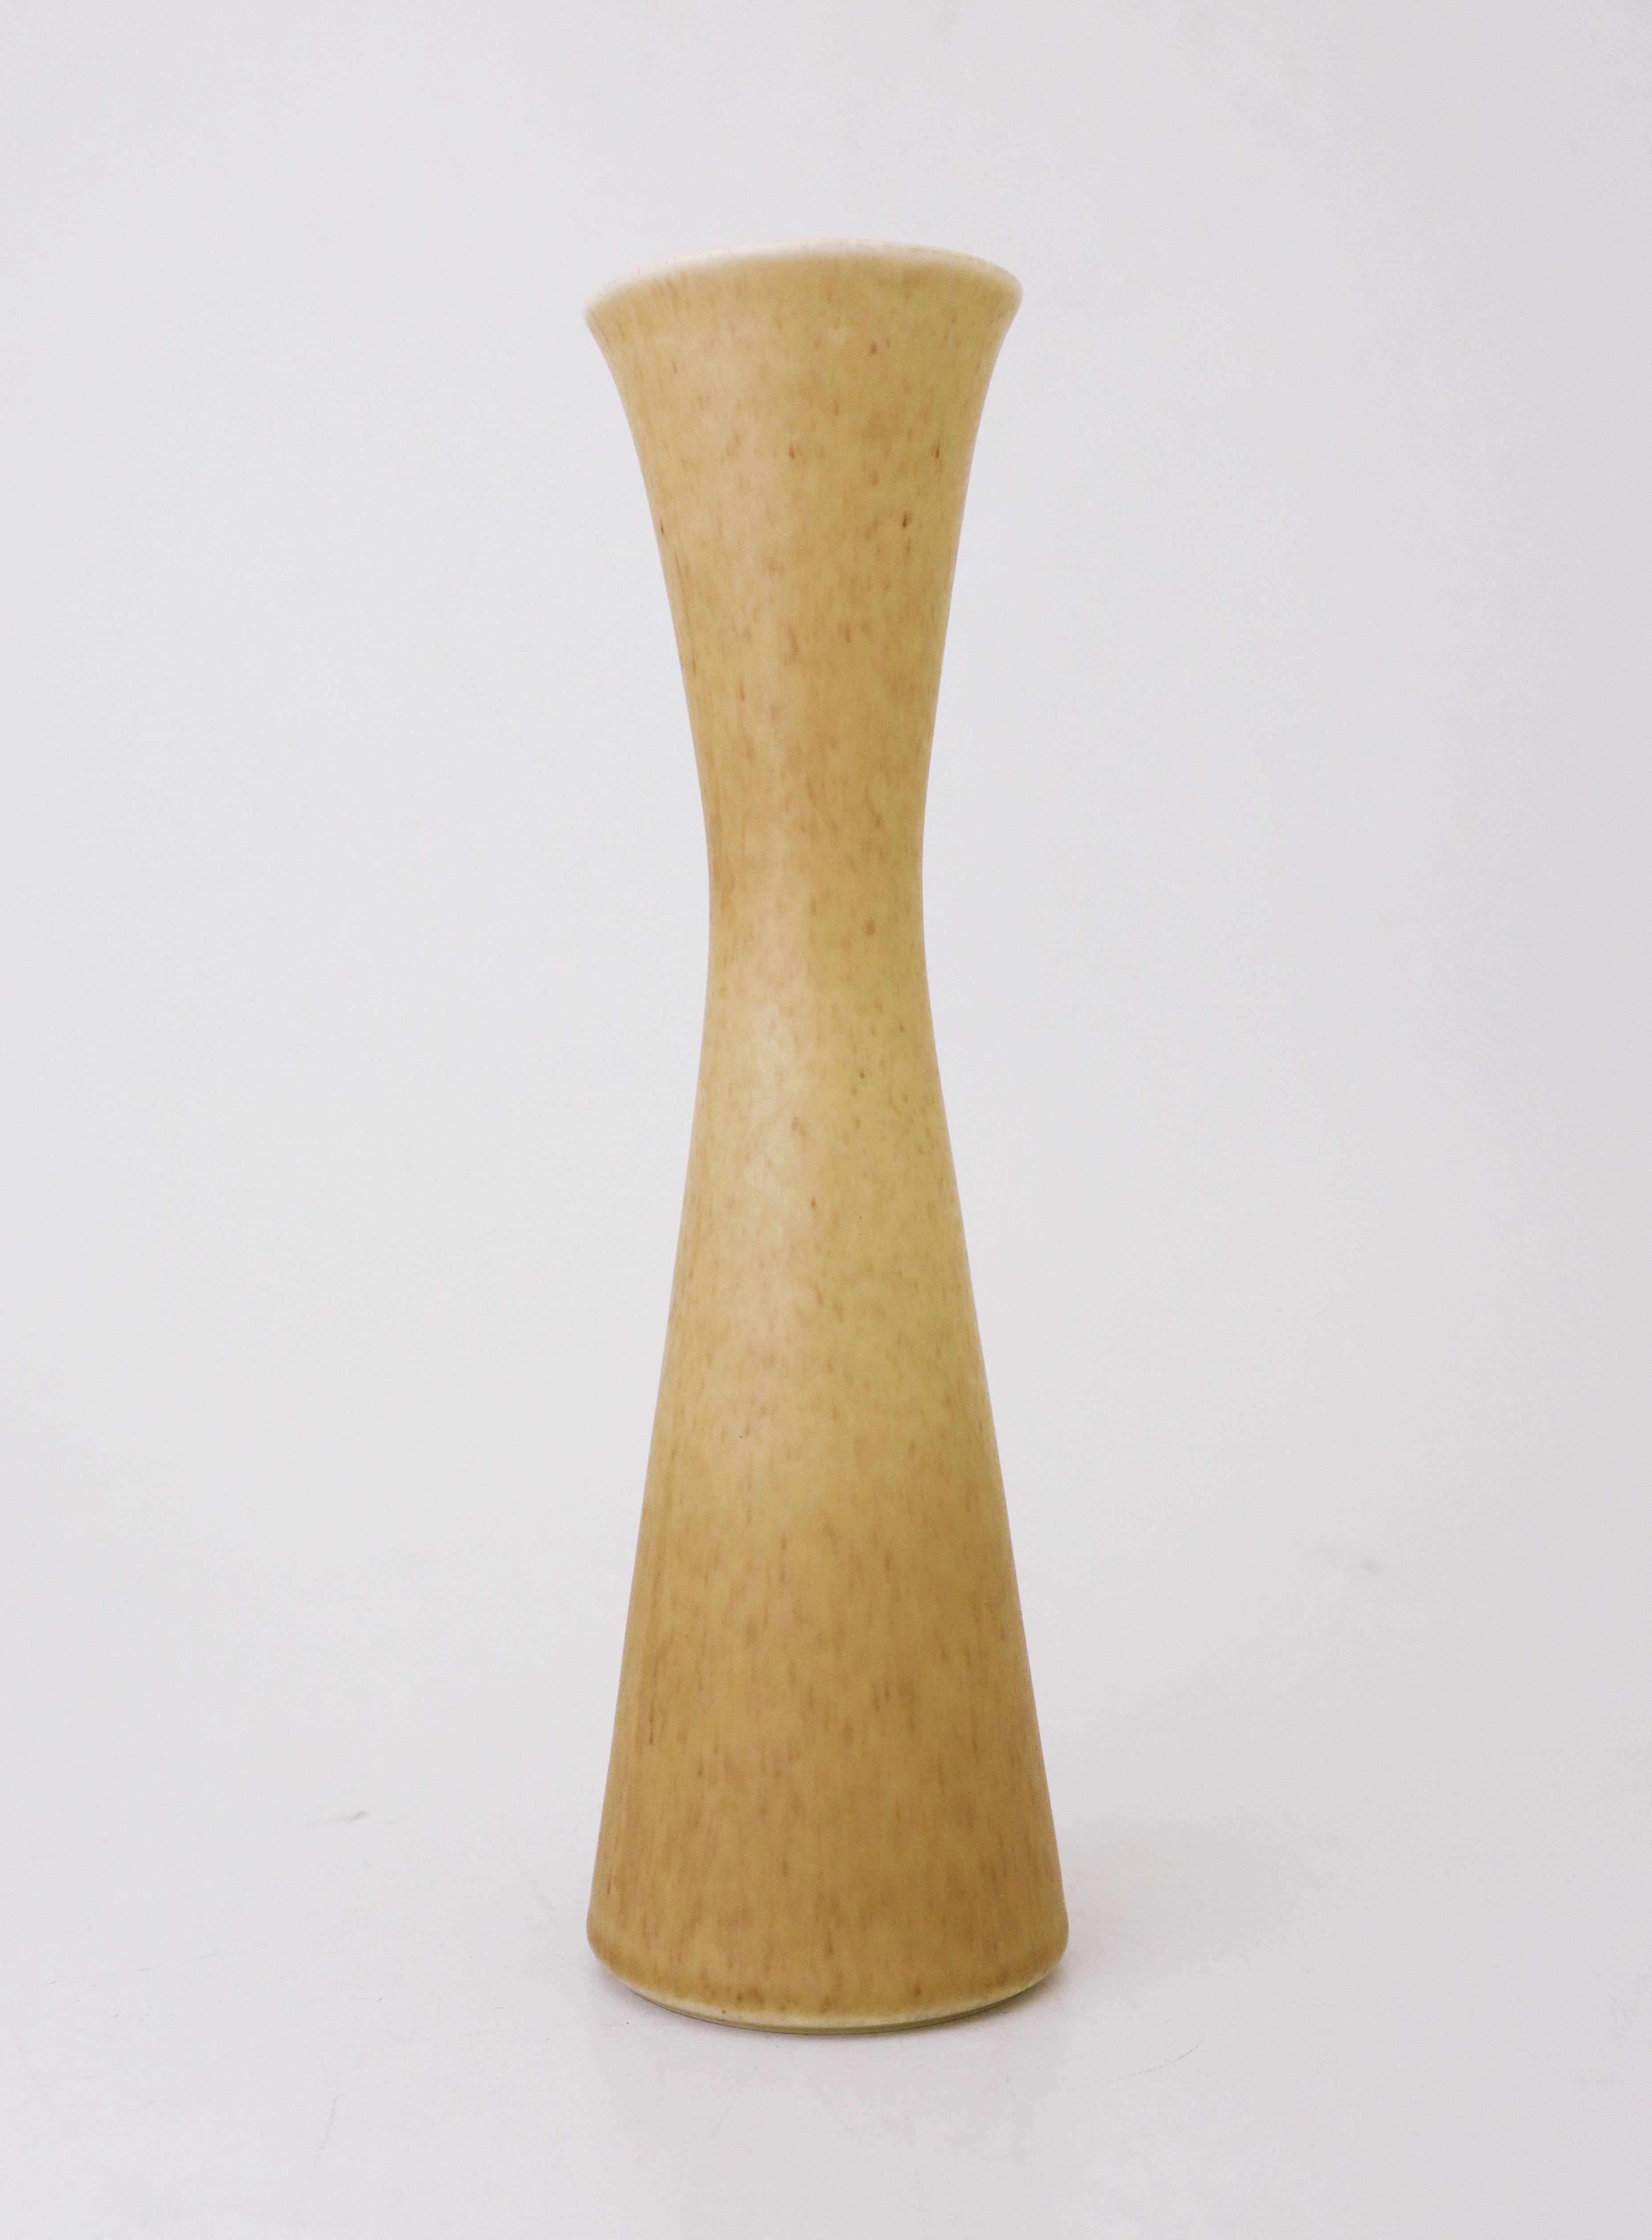 Eine Vase mit gelber Glasur, entworfen von Gunnar Nylund in Rörstrand, Modell Granola, 26 cm hoch und 7,5 cm im Durchmesser. Es ist in neuwertigem Zustand und als 1. Qualität gekennzeichnet.
Gunnar Nylund wurde 1904 in Paris geboren. Seine Eltern